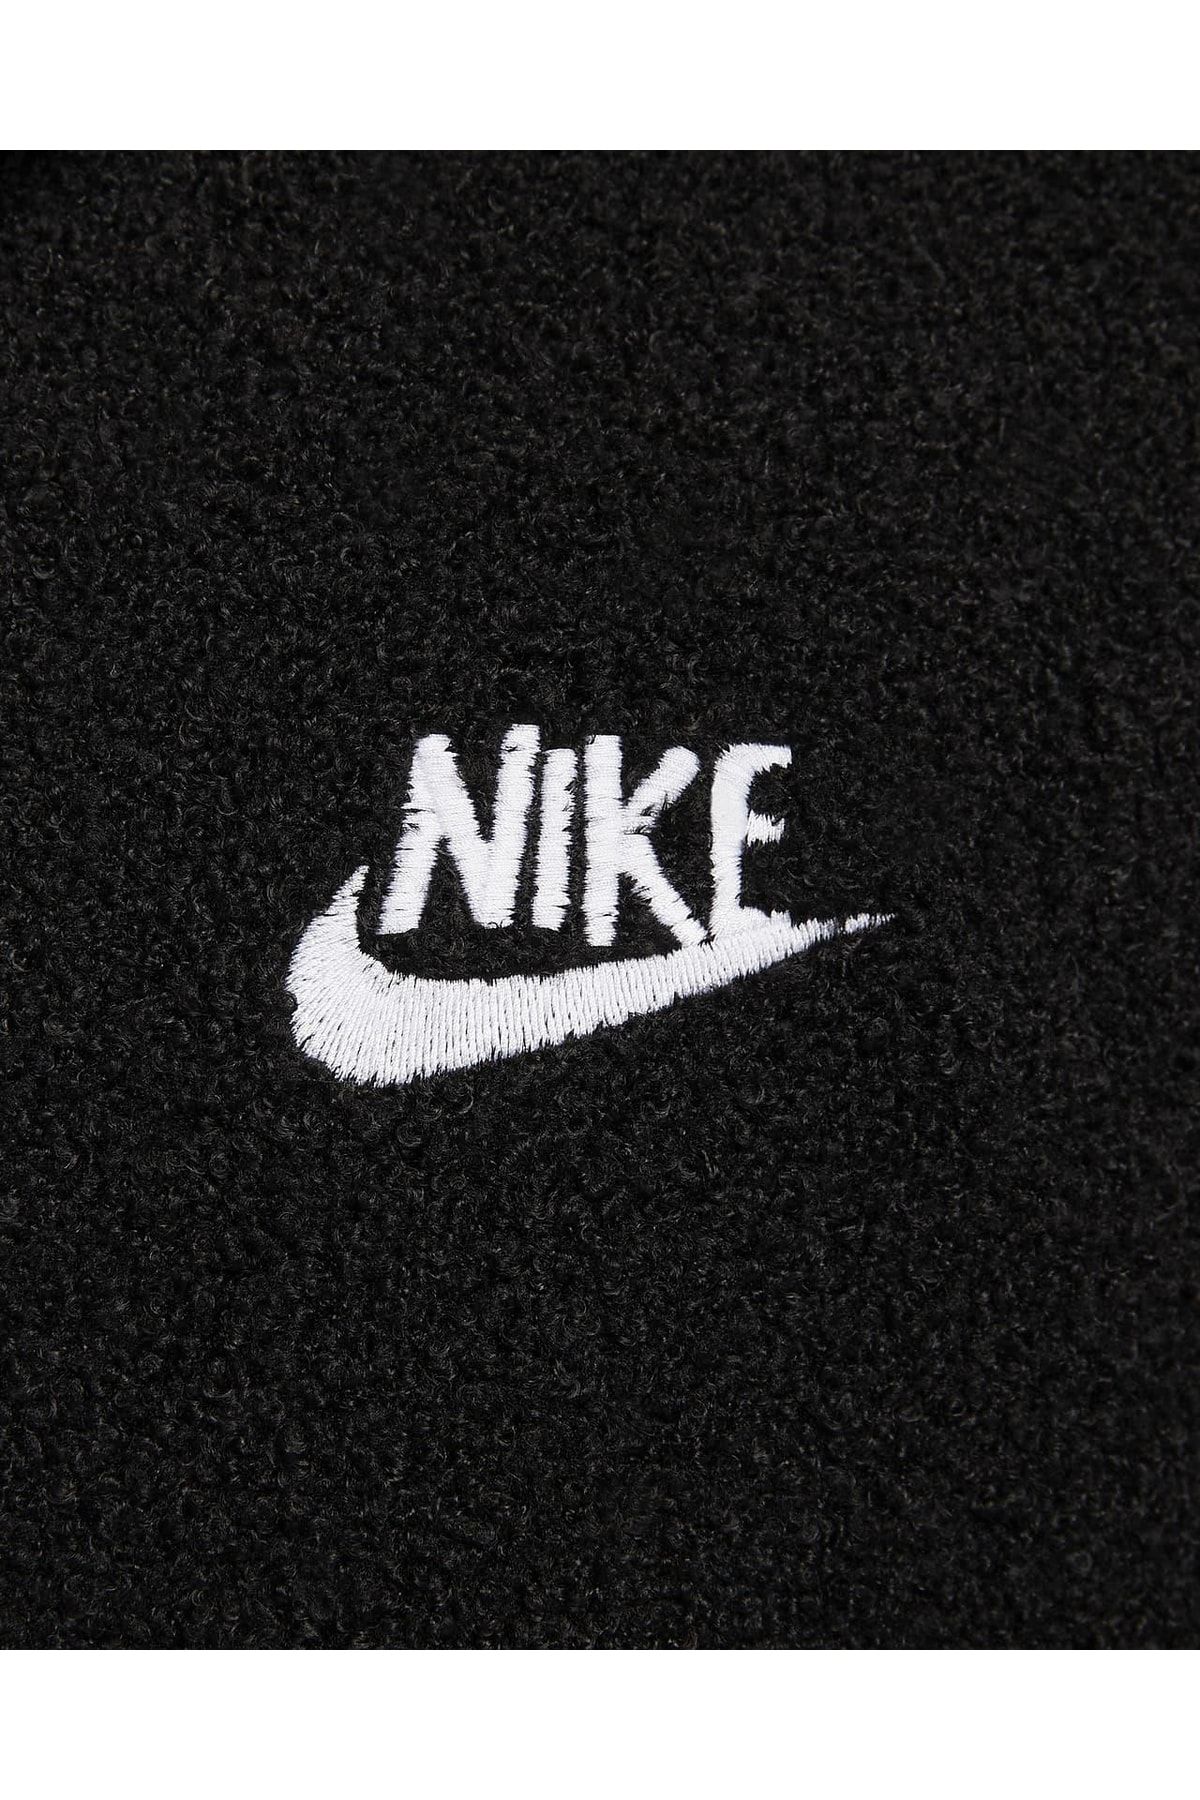 Nike ژاکت مربیگری زمستانه اندود مردانه-DQ4191-010